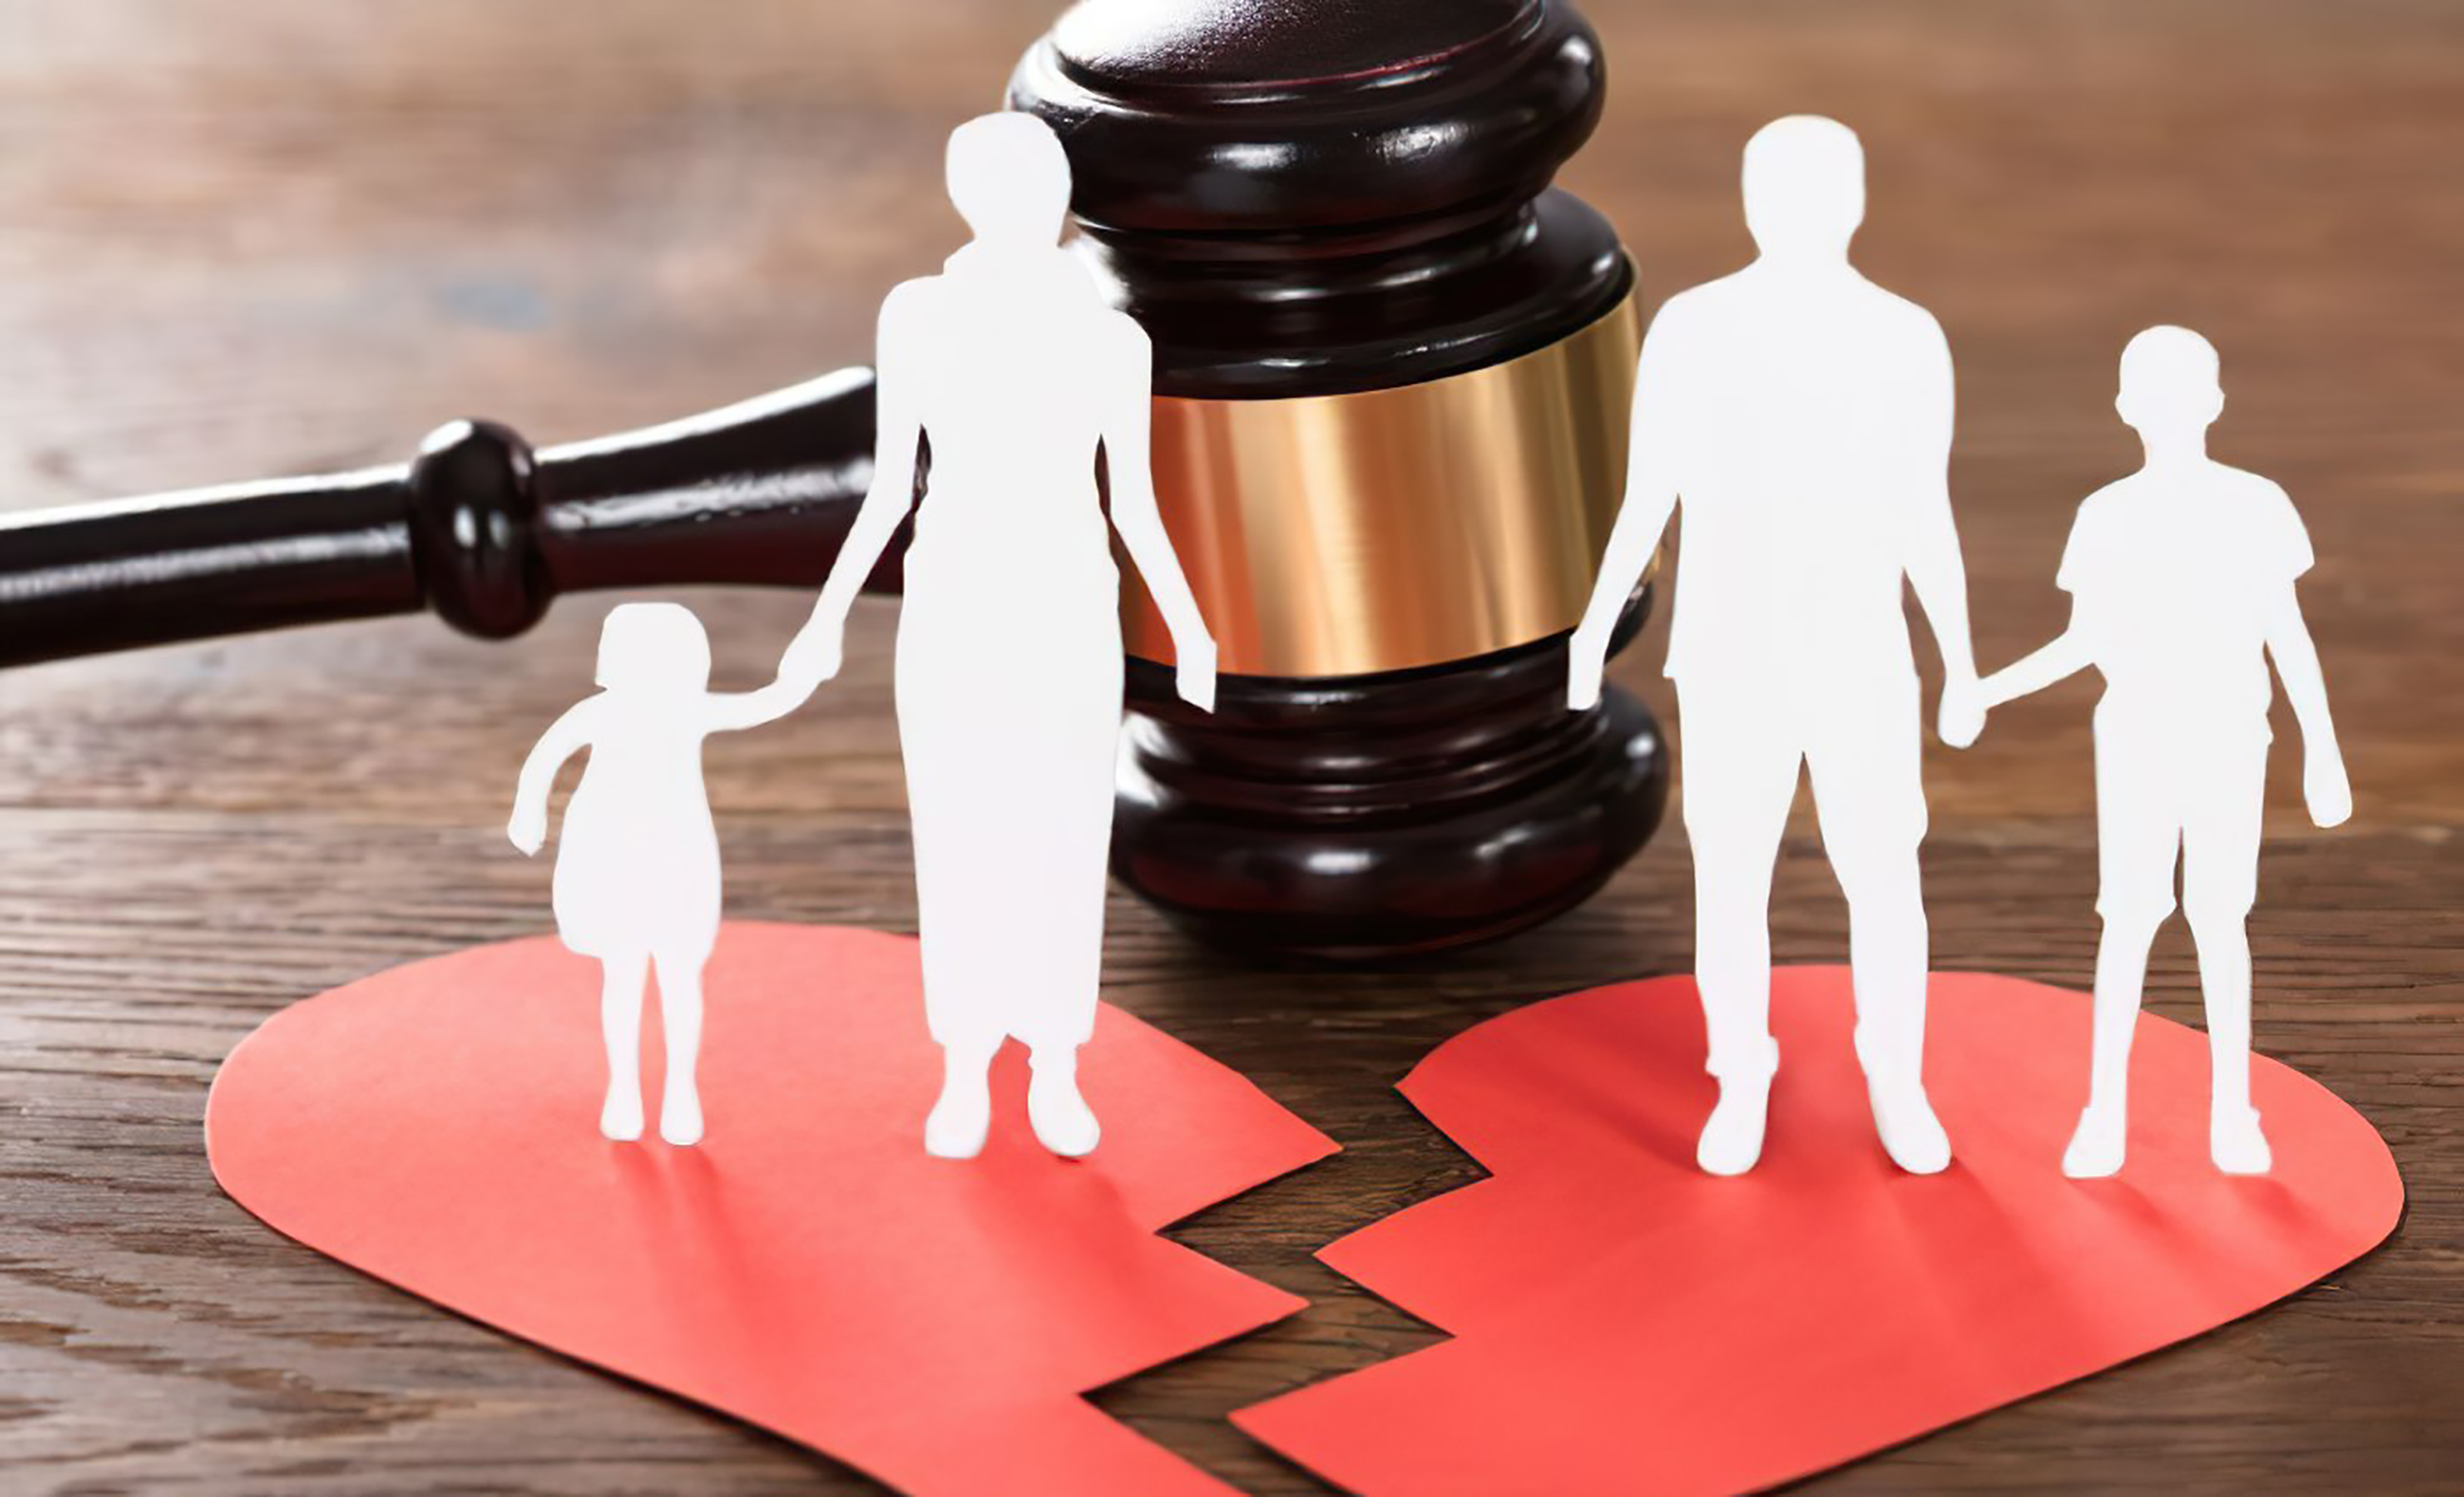 TANDTC hướng dẫn thuận tình ly hôn và đơn phương ly hôn